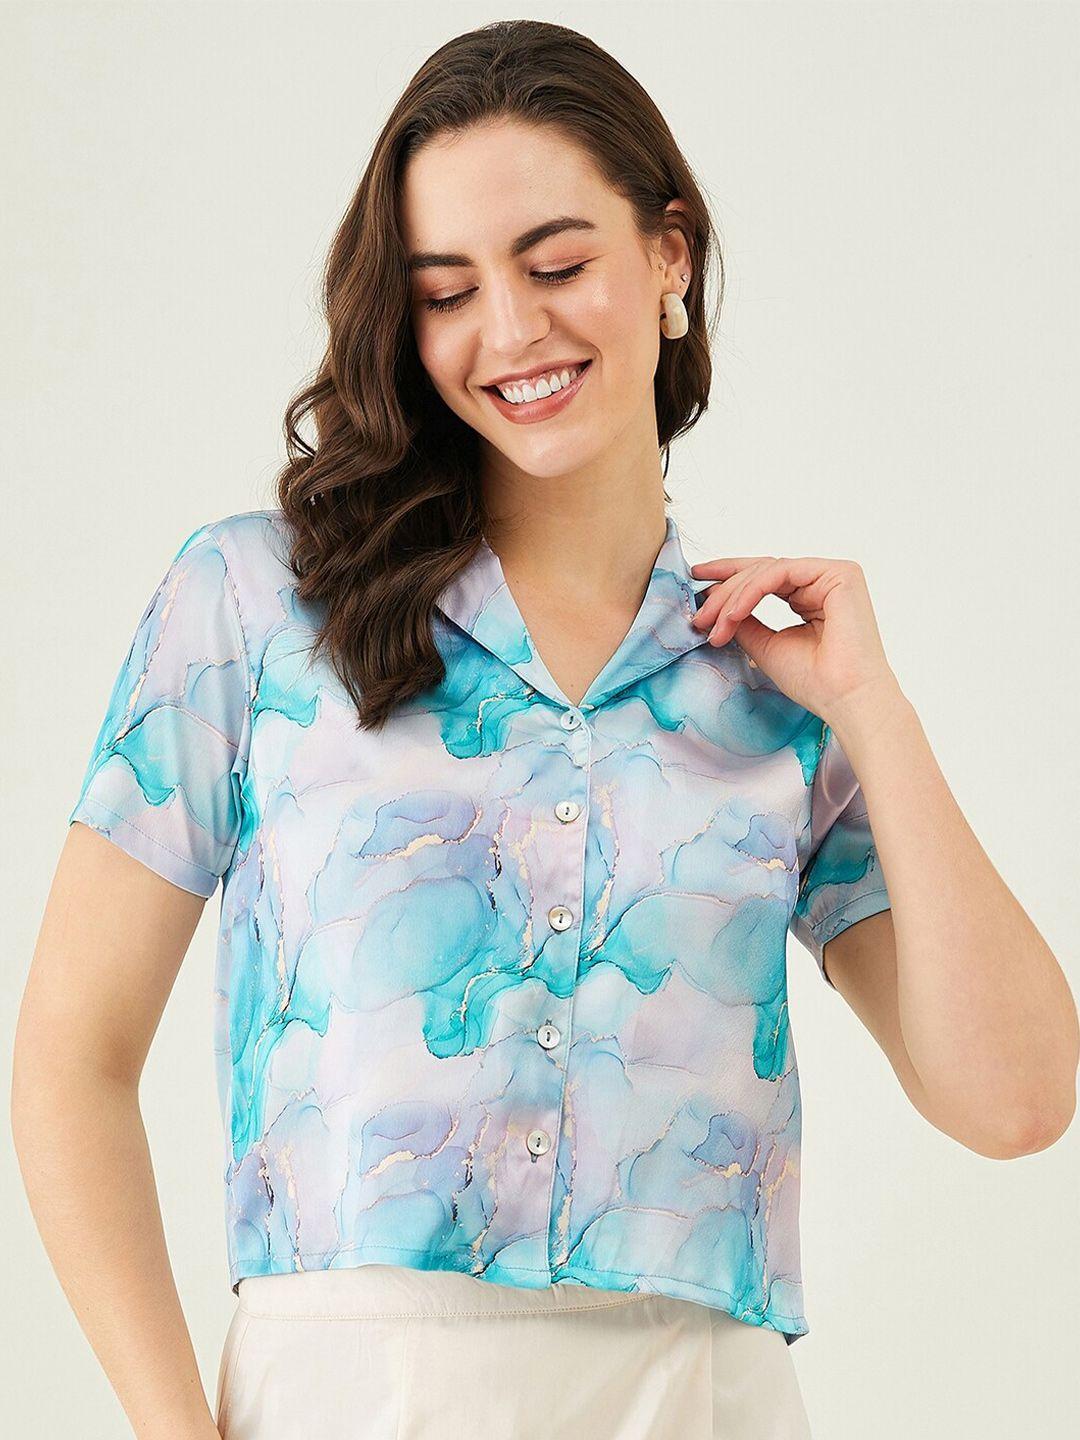 modeve floral printed shirt collar satin crop shirt style top